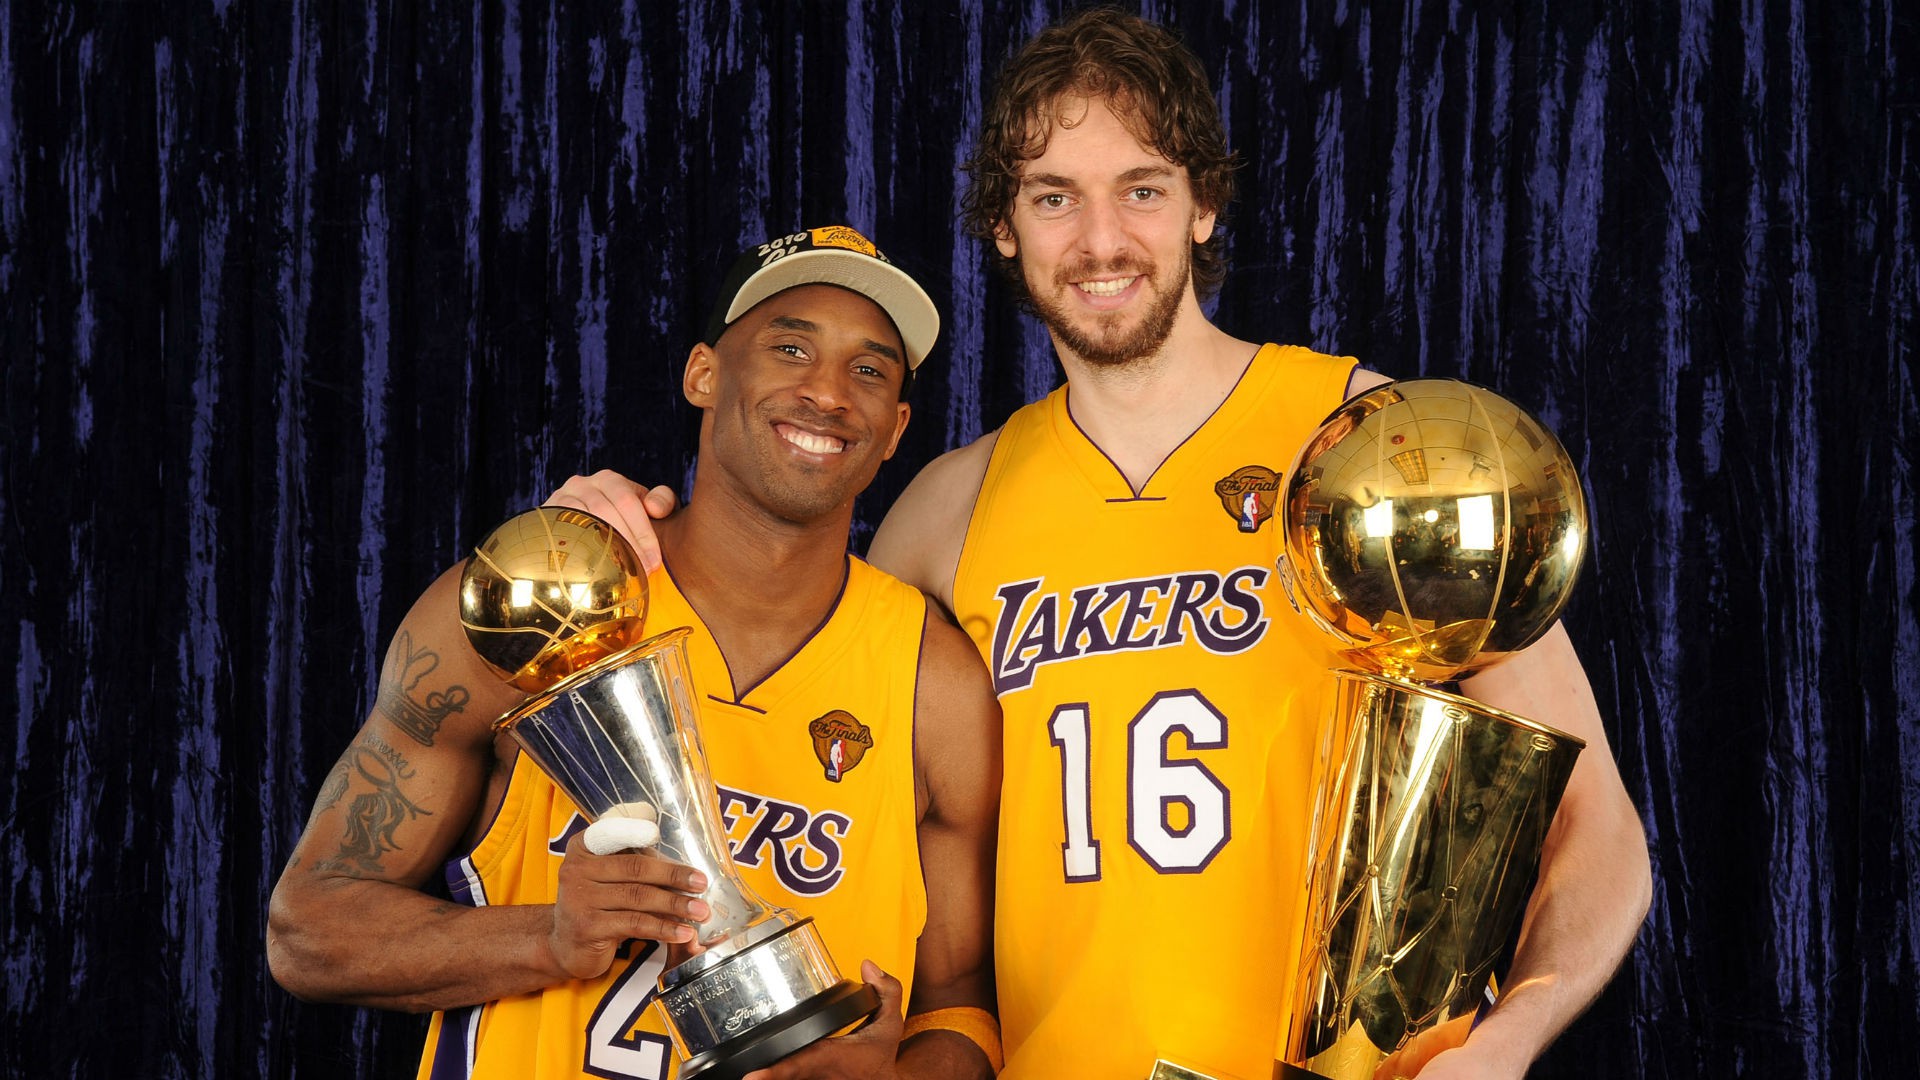 Lần đầu sau 5 năm, LeBron James và Lonzo Ball đạt chỉ số assist kinh như Kobe Bryant và Pau Gasol tại Lakers - Ảnh 1.